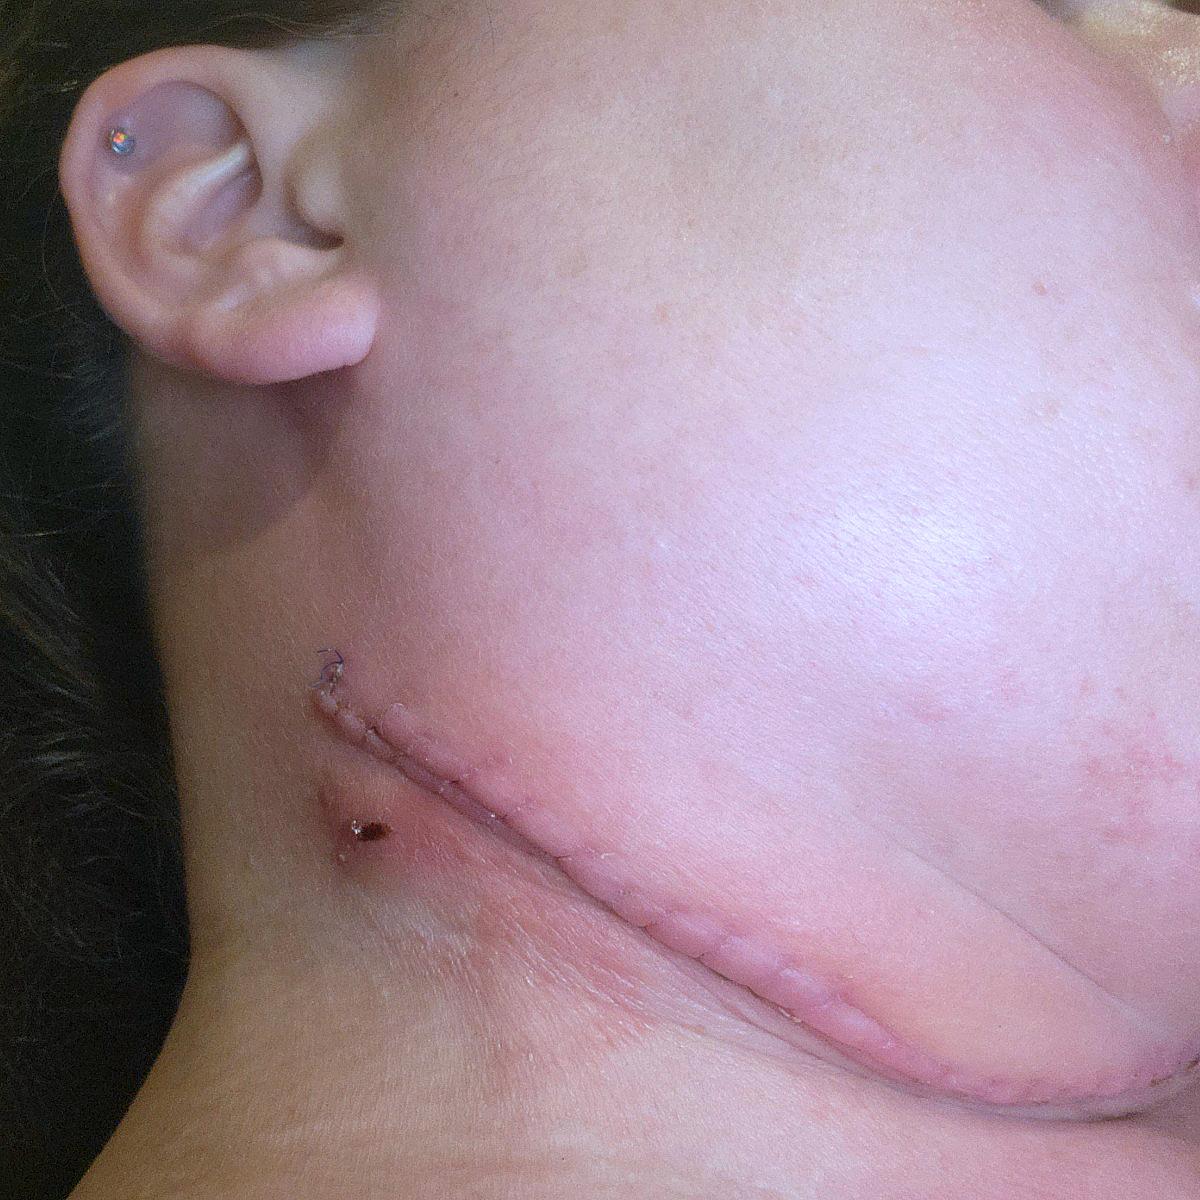 Karen Jensen's neck healing after several days